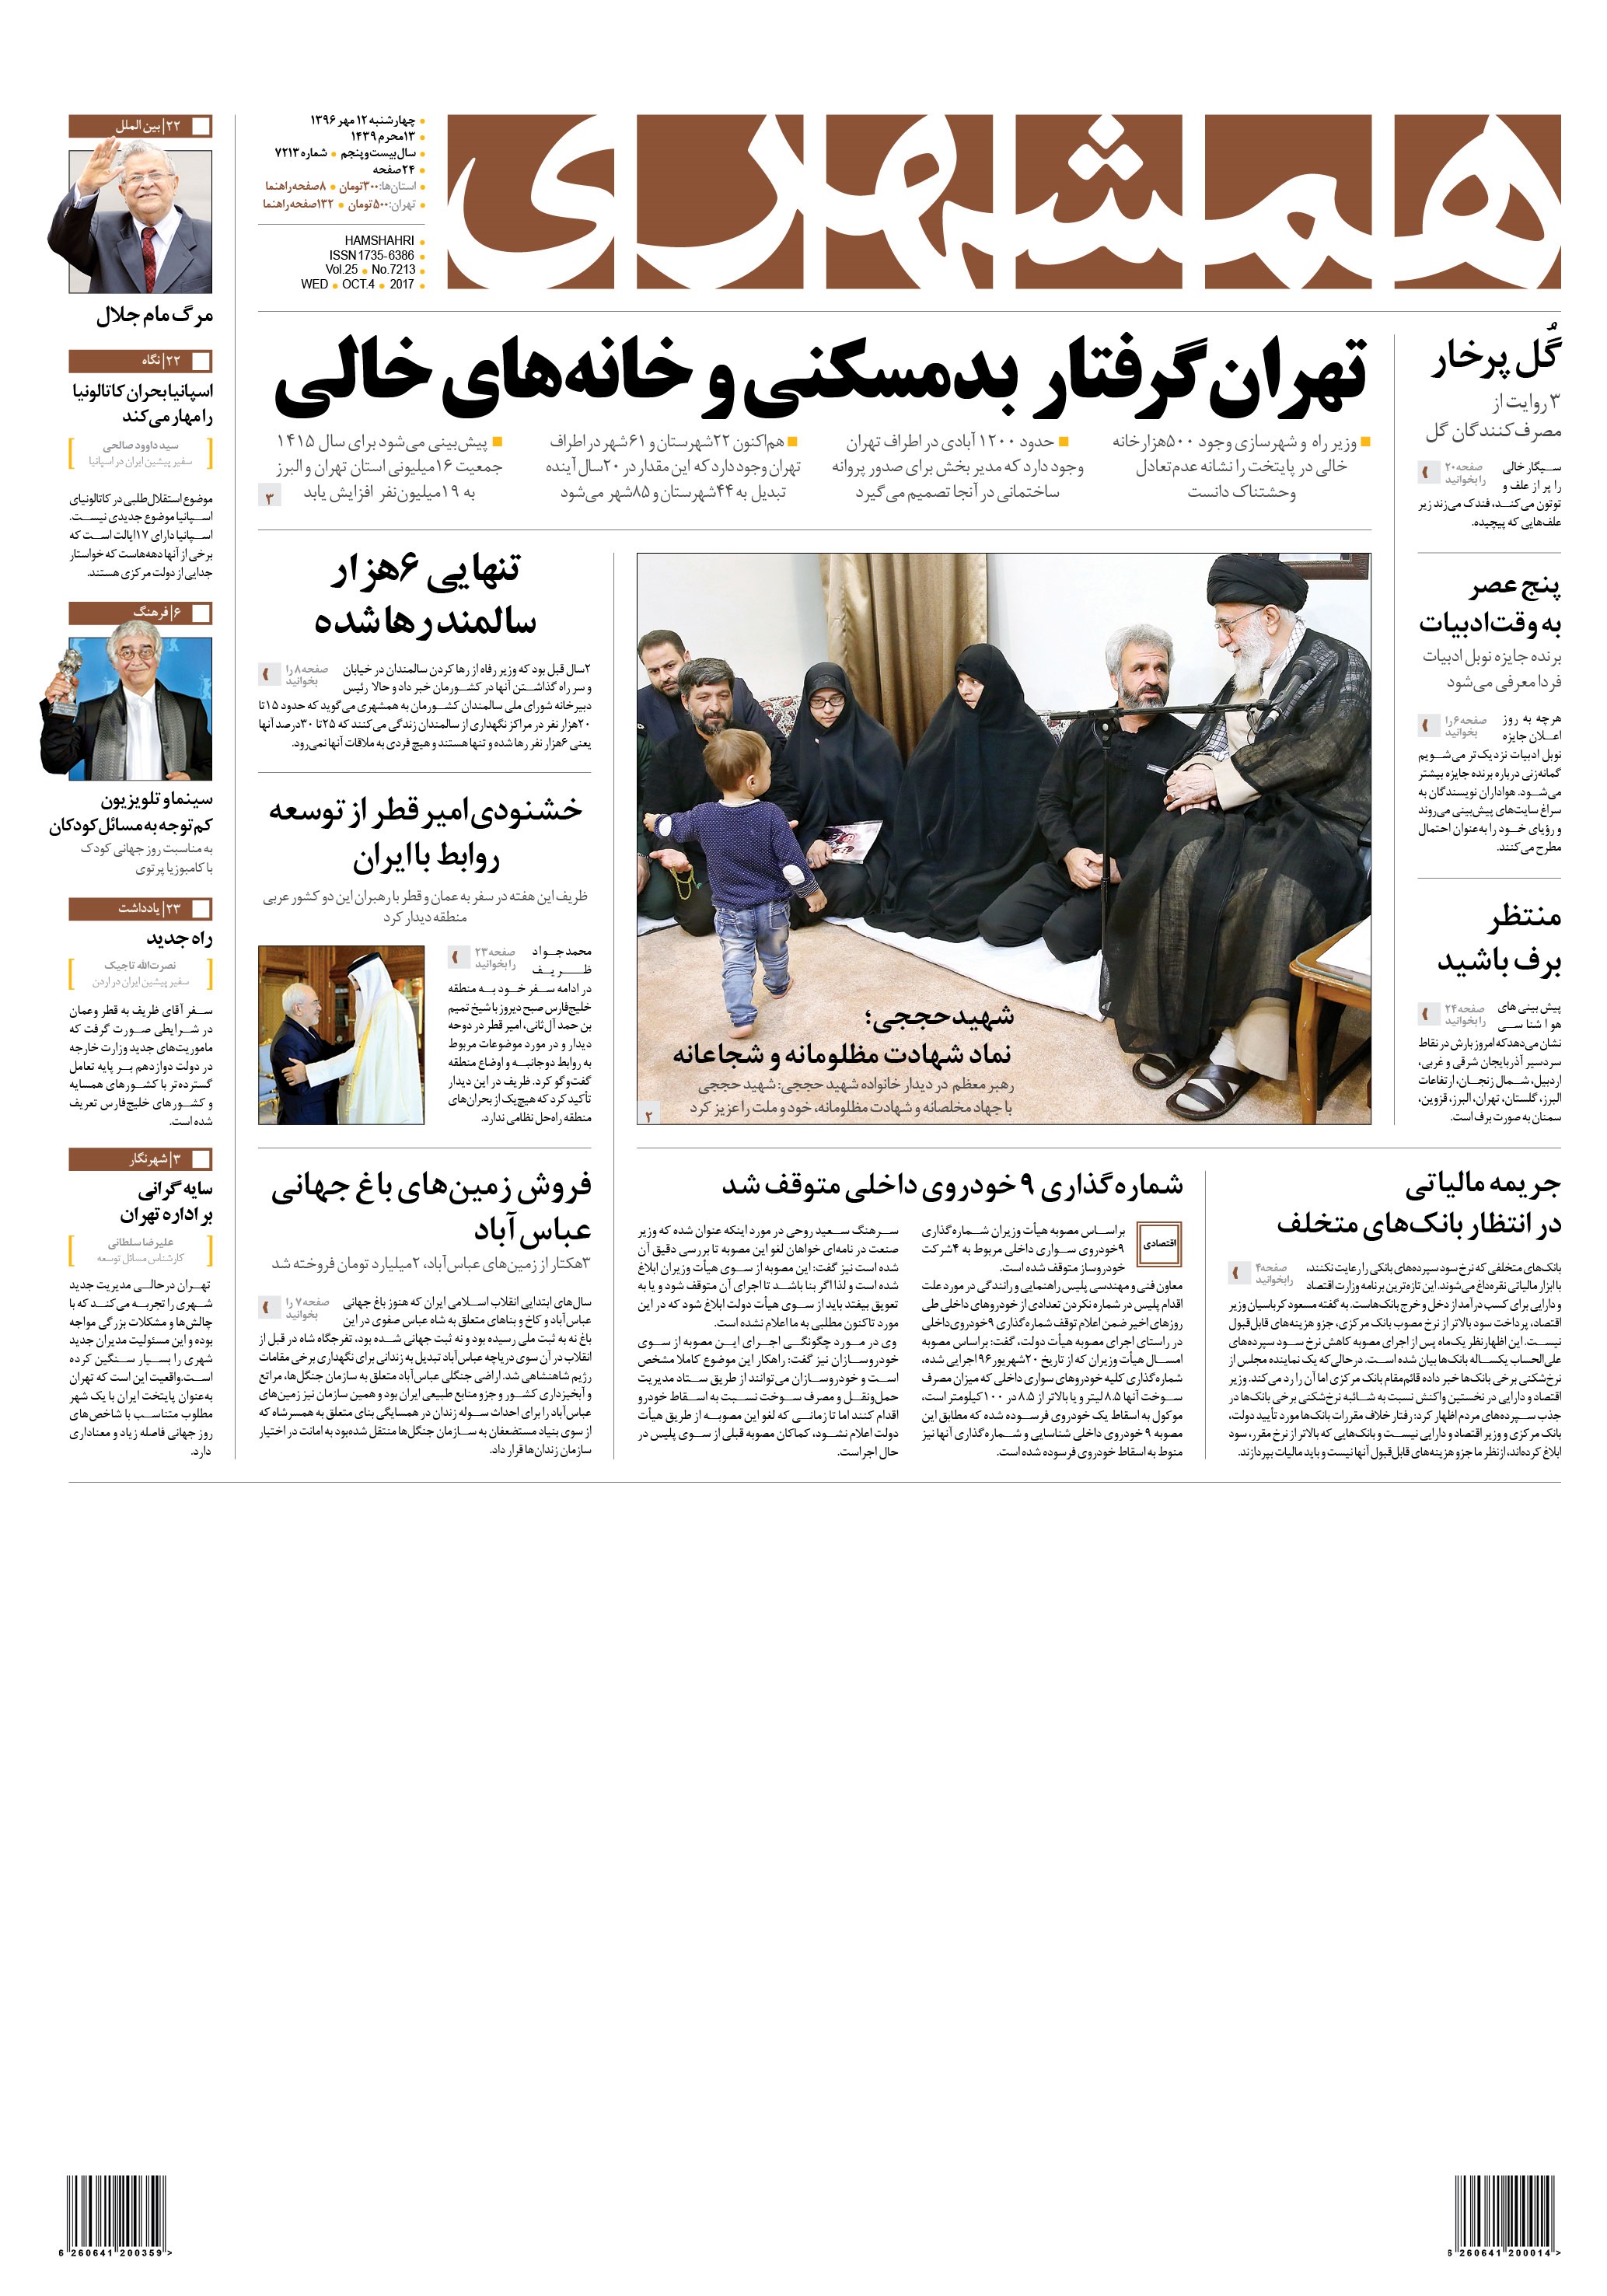 صفحه اول روزنامه  دوزدهم  مهر